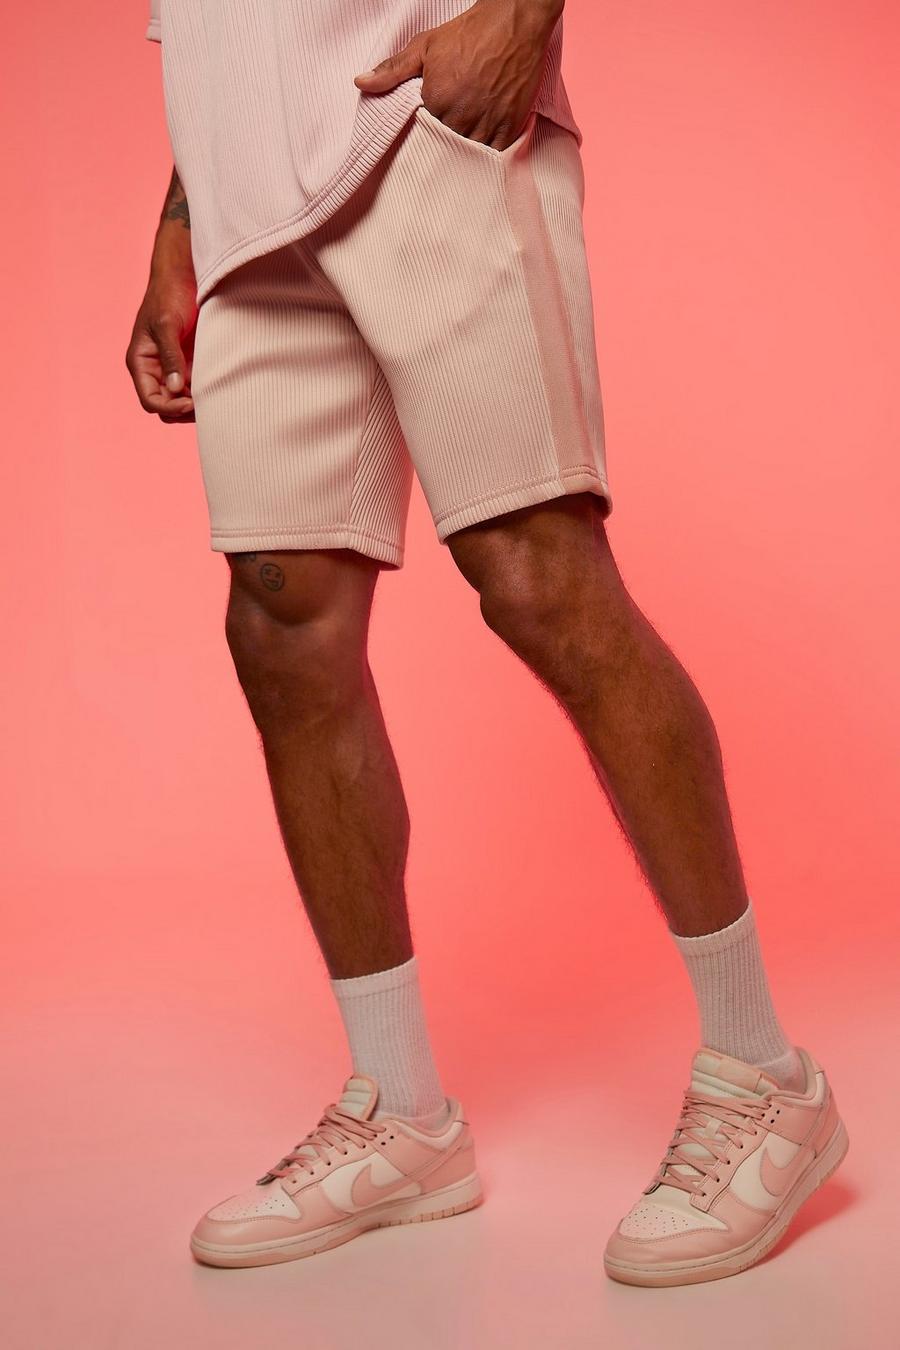 Light pink Mellanlånga shorts i slim fit med kantband